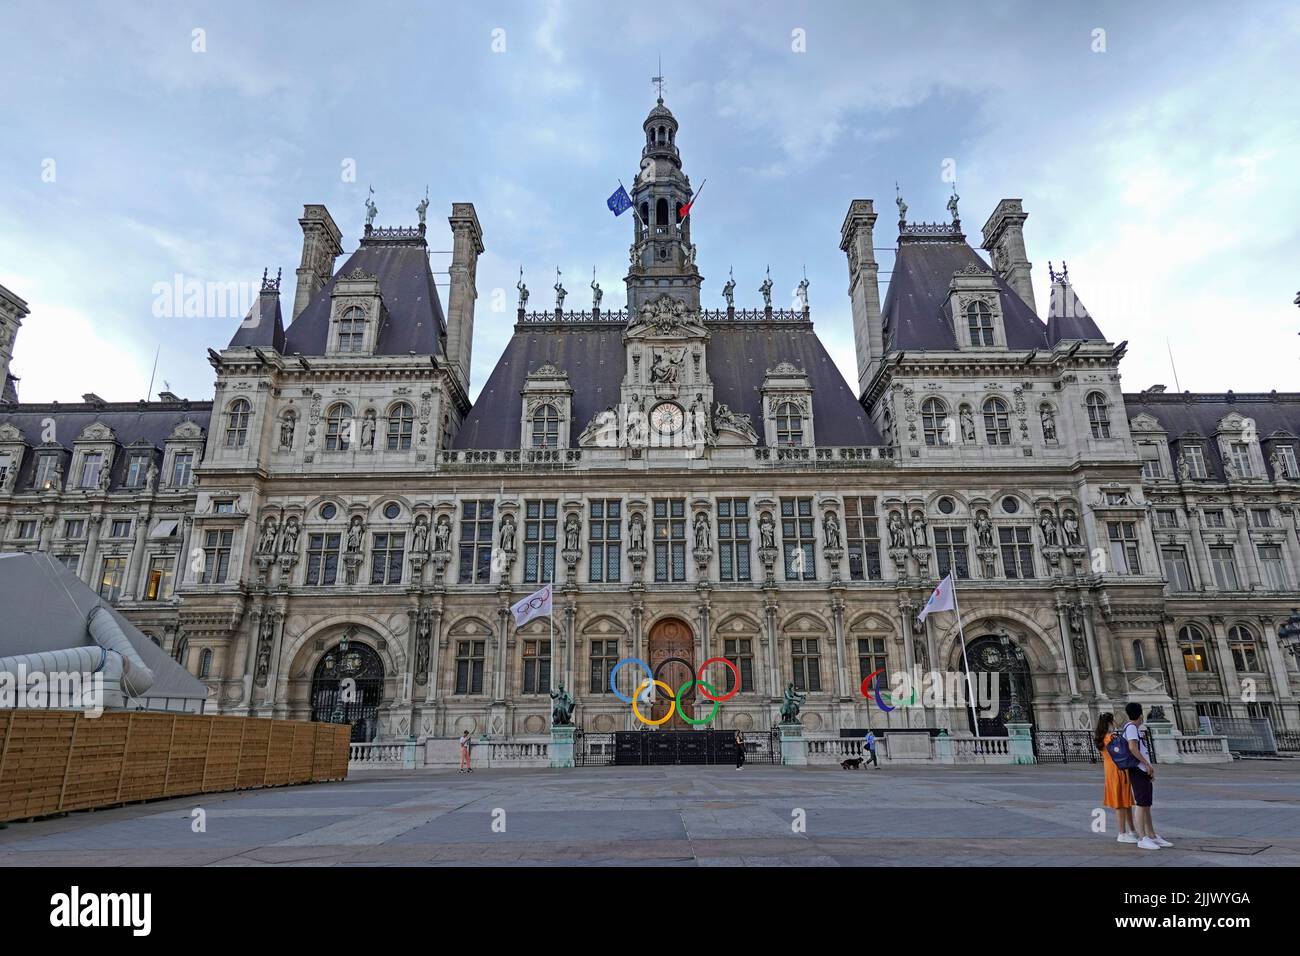 Francia, París, el Hotel de Ville City Hall , es el edificio que alberga la administración local de la ciudad, situado en la Place de l'Hotel-de-Ville. PH Foto de stock